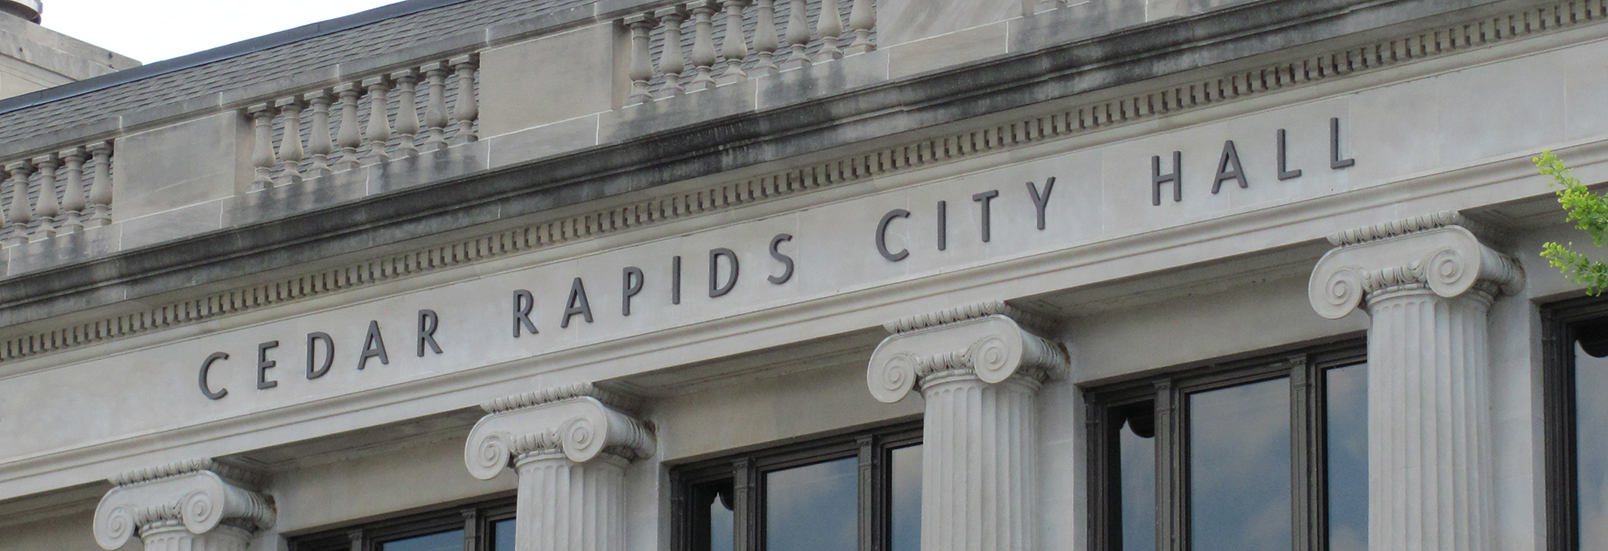 Cedar Rapids City Hall Building